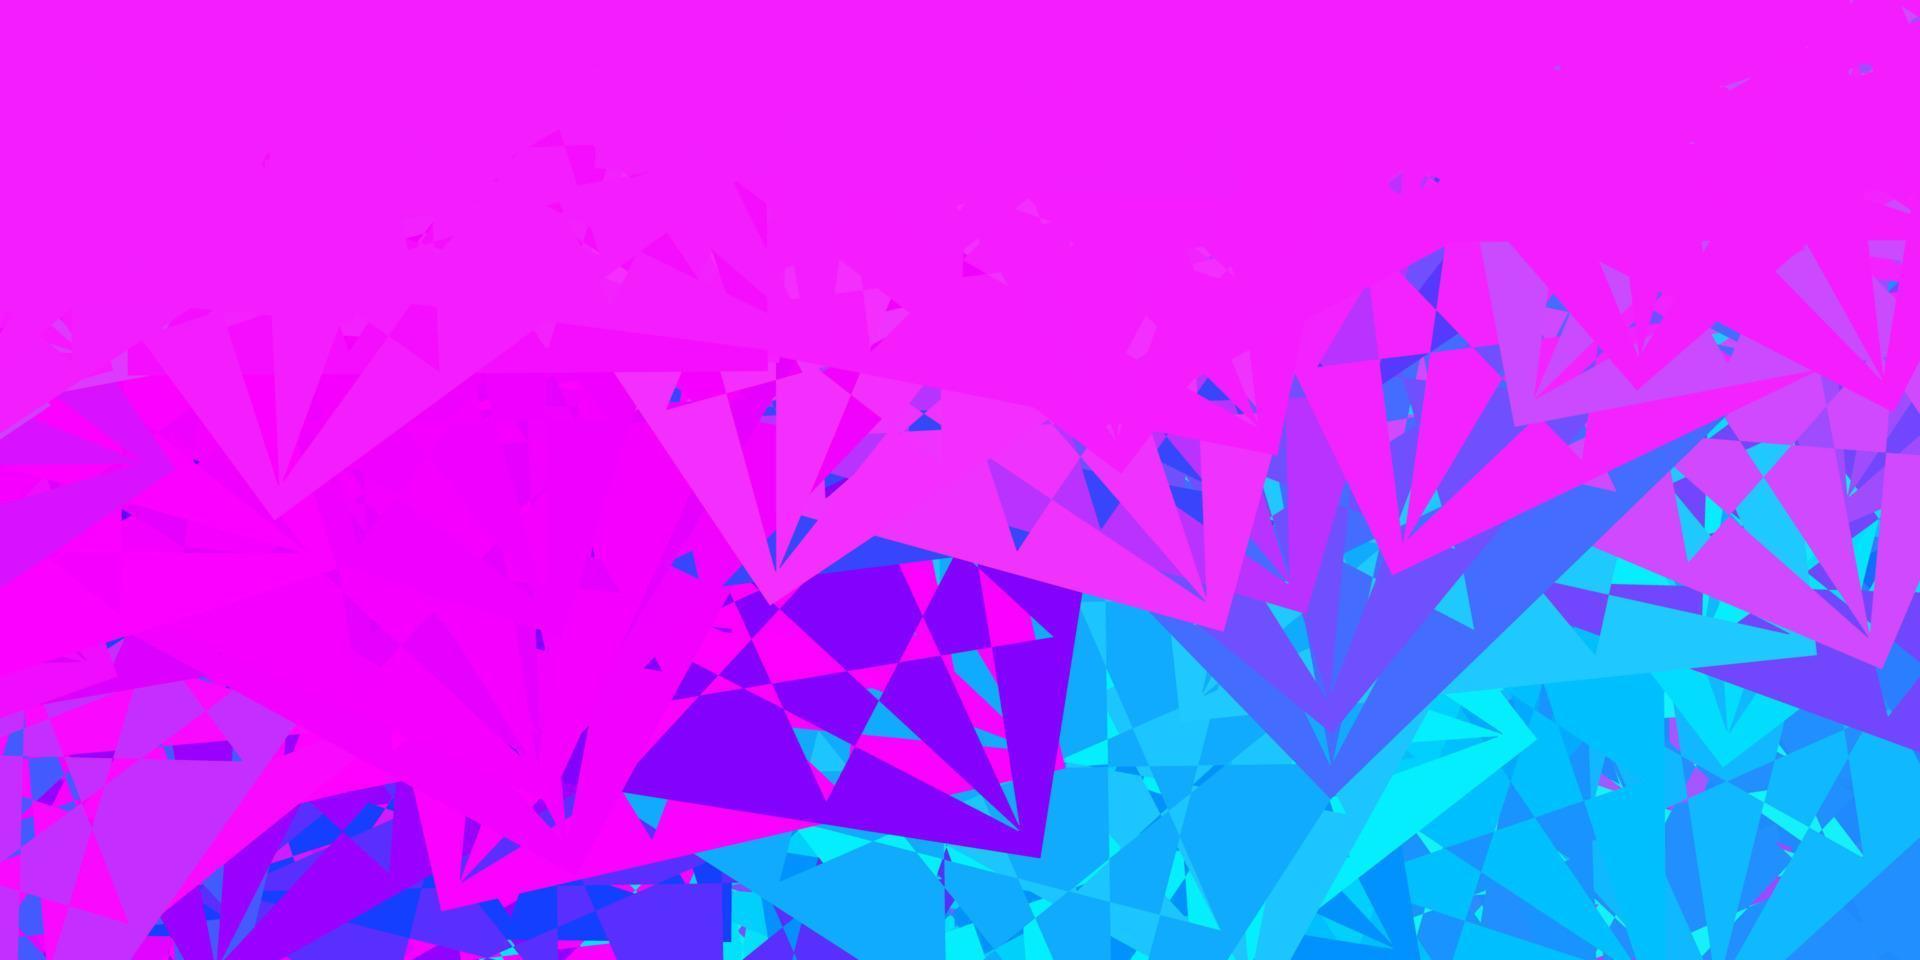 plantilla de vector rosa claro, azul con formas triangulares.